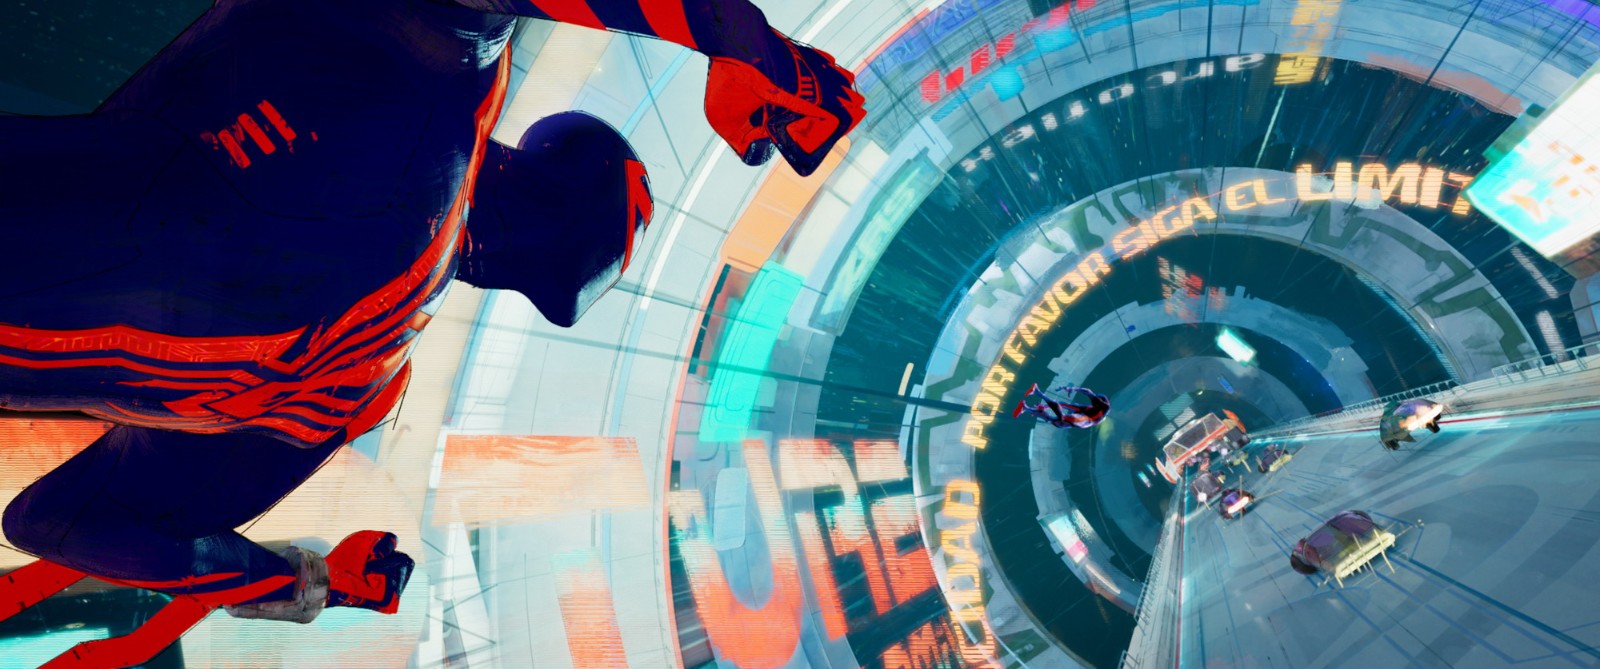 《蜘蛛侠：平行宇宙2》正式预告 小黑蛛和格温继续冒险